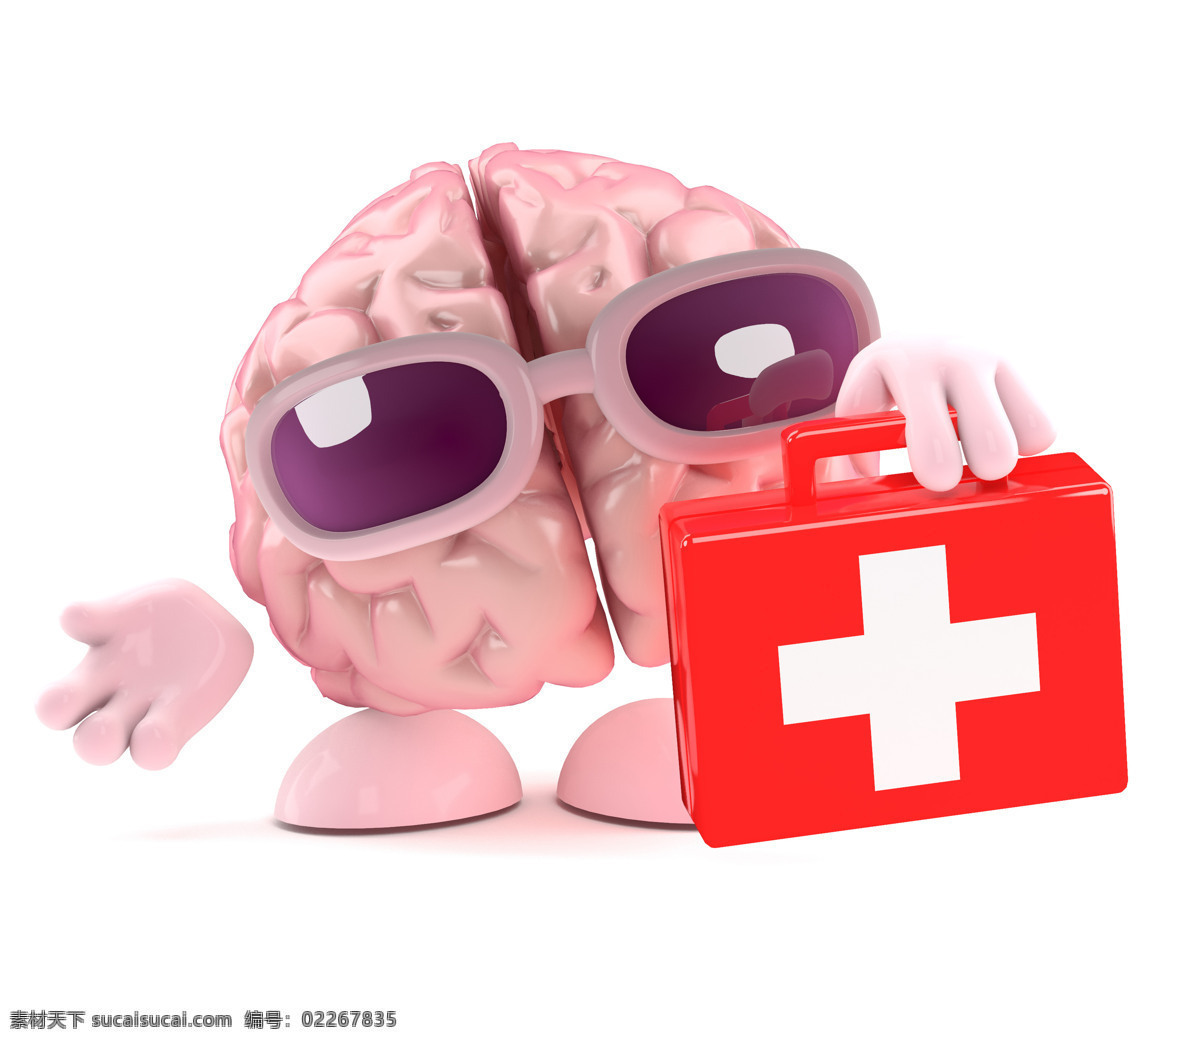 大脑 漫画 医生 急救箱 人类大脑 大脑漫画 大脑设计 卡通大脑 大脑人物 虚拟人物 儿童卡通 卡通动画 脑细胞 脑容量 太阳镜 动漫动画